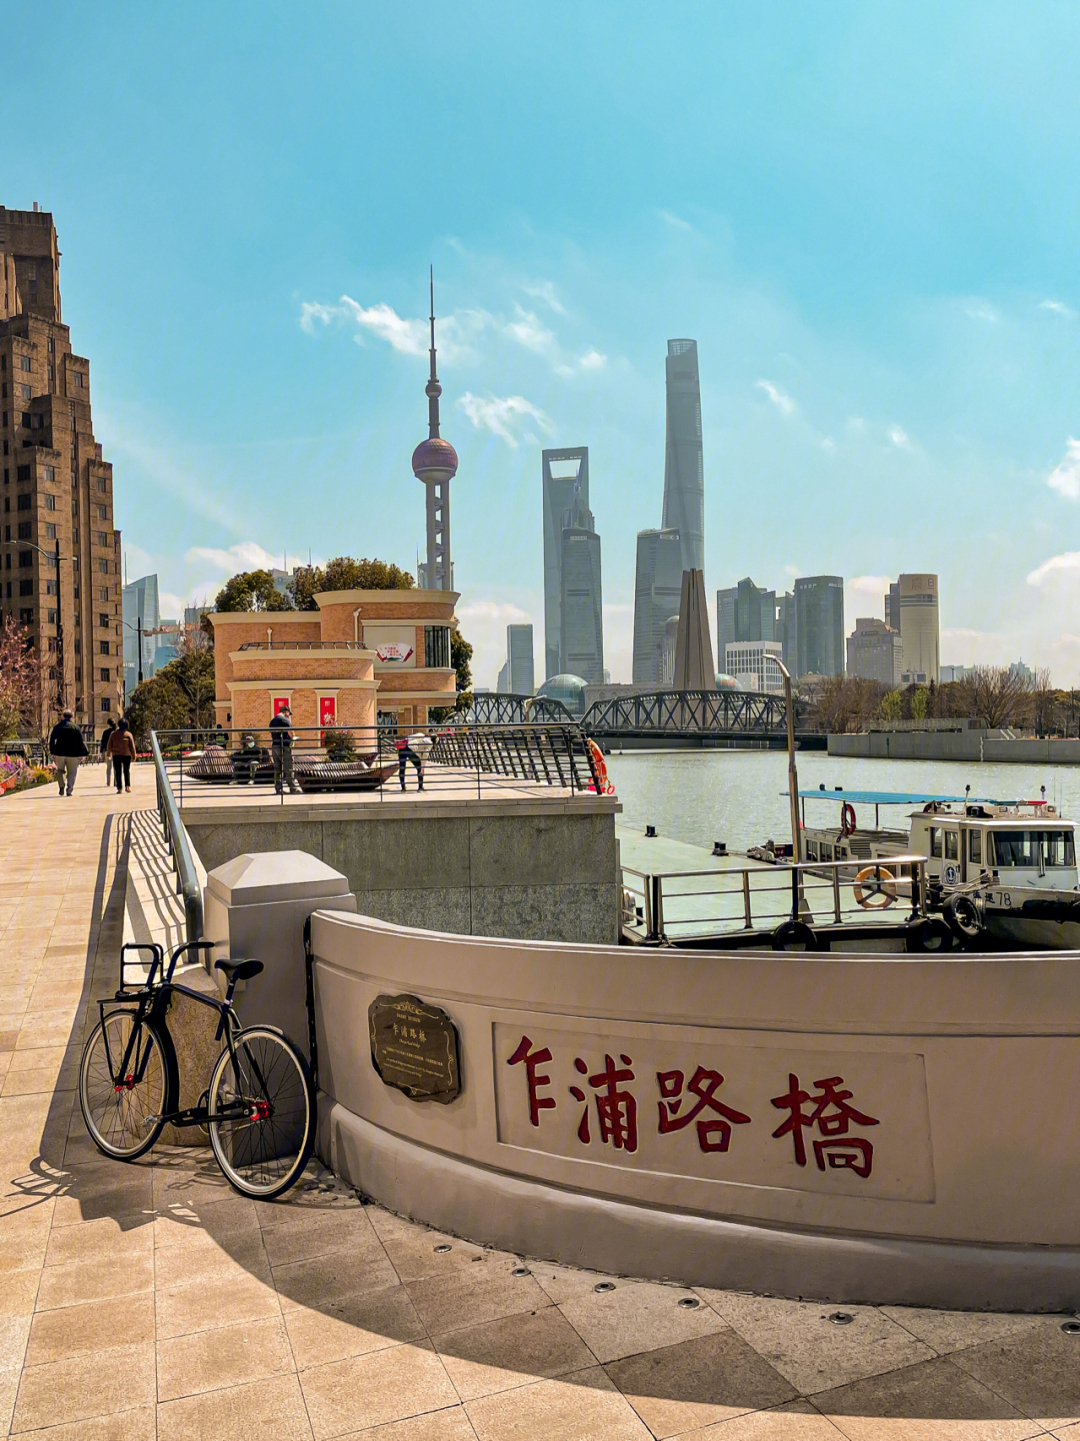 可能是上海外滩经典最美单车骑行路线